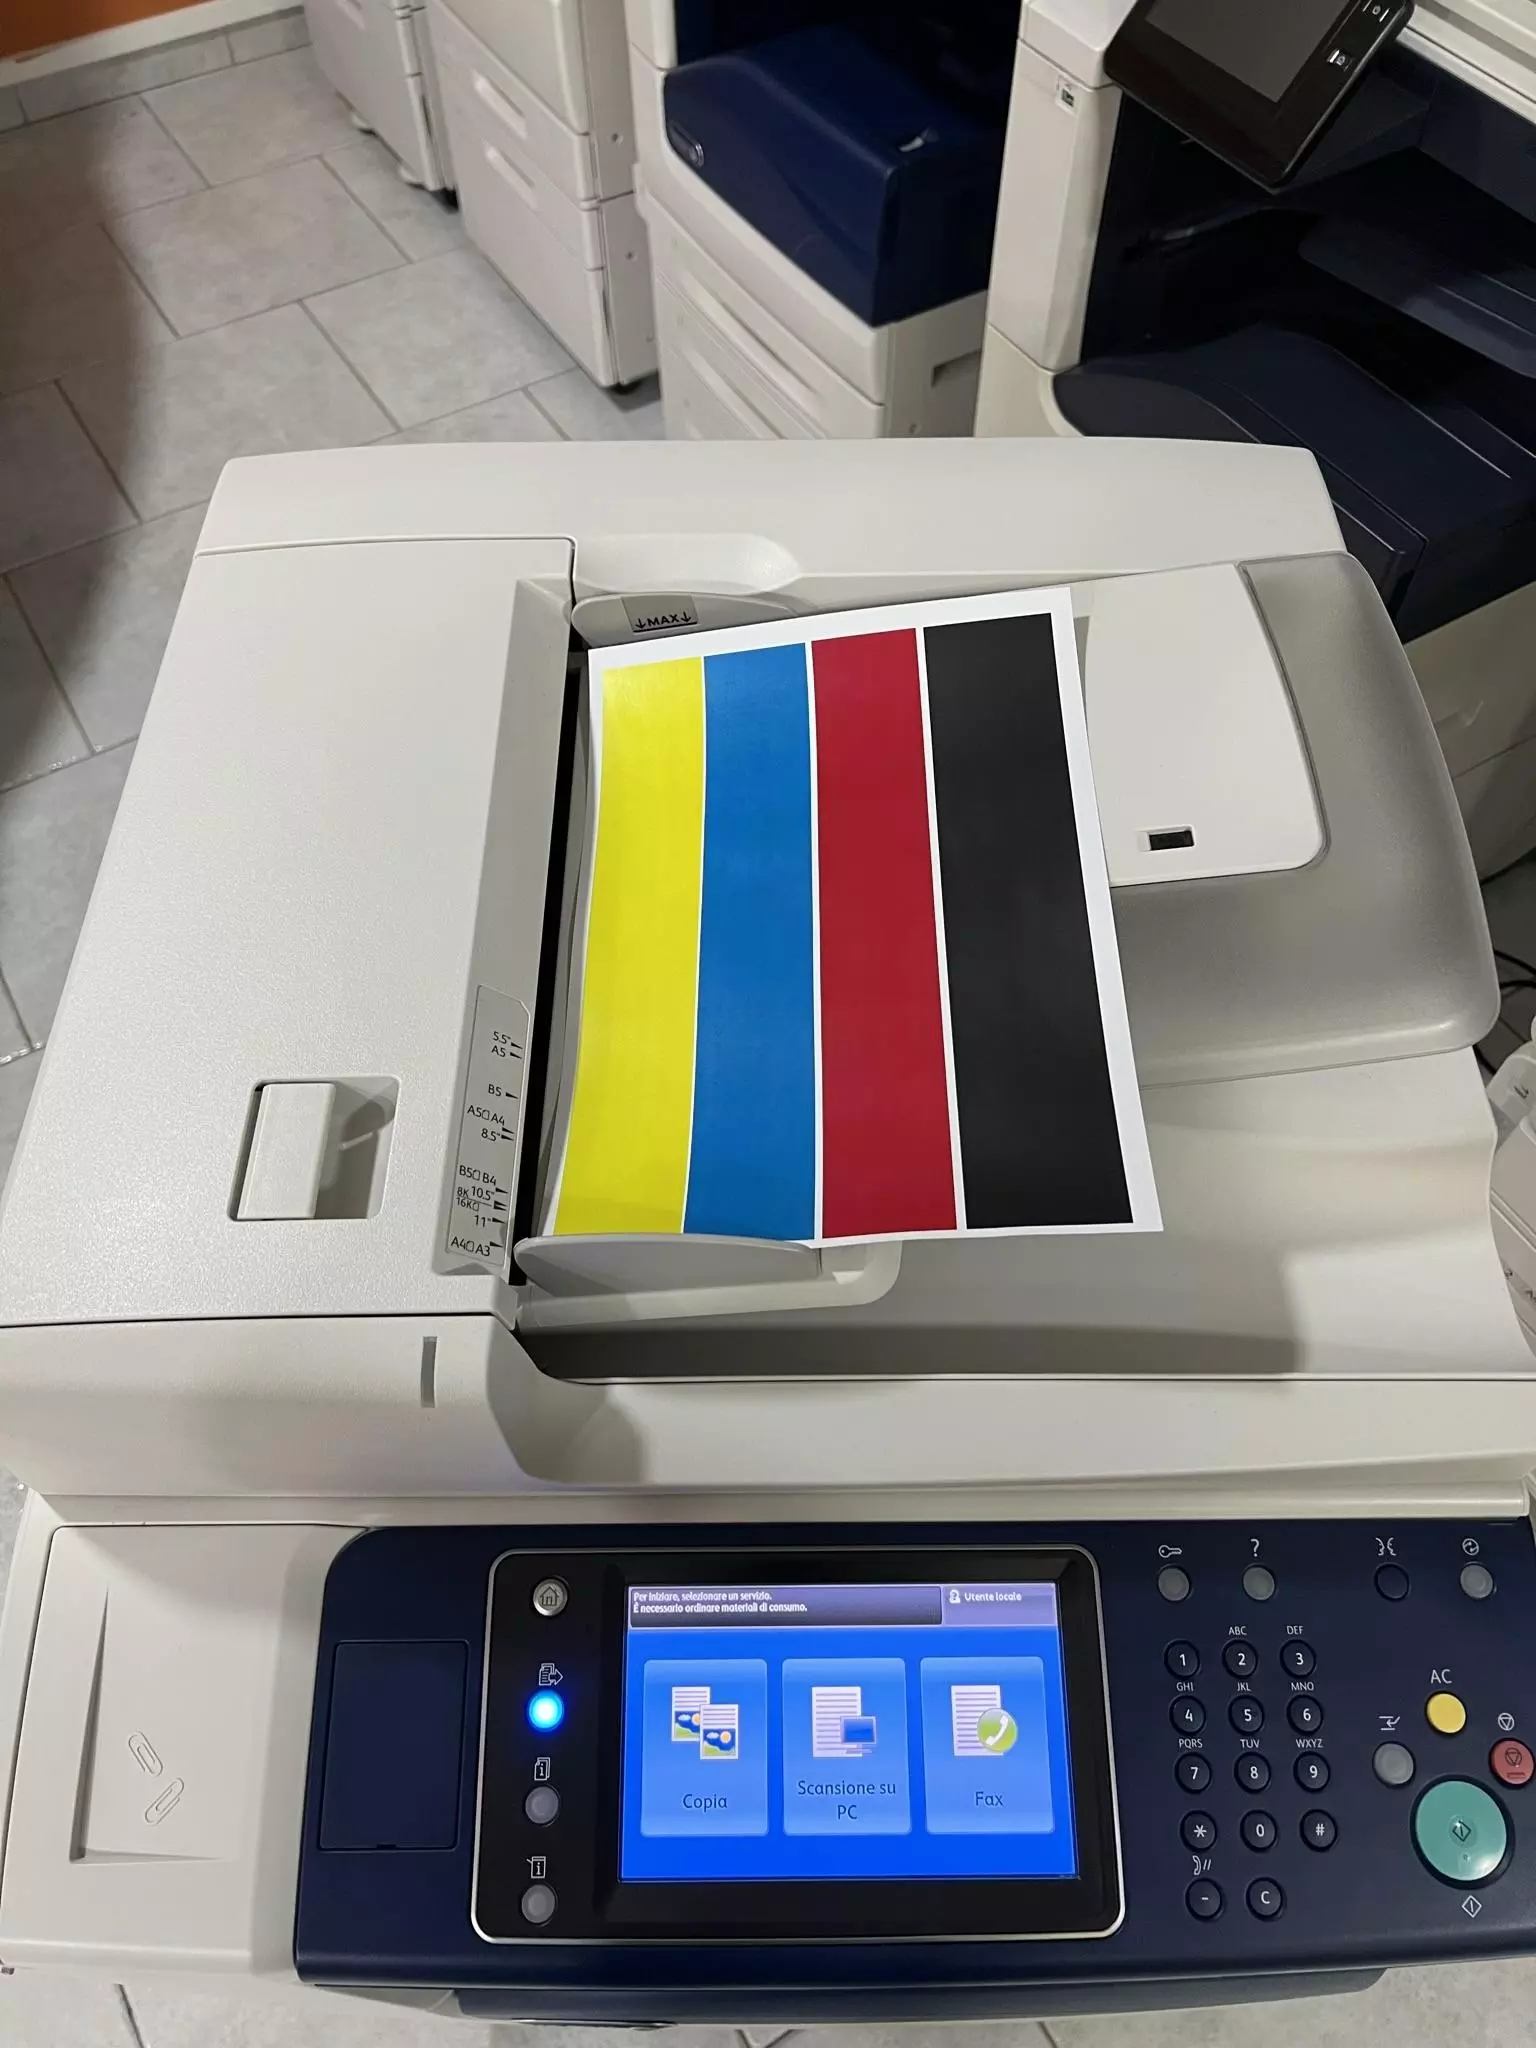 Stampante Multifunzione - Xerox® WorkCentre™ 7120